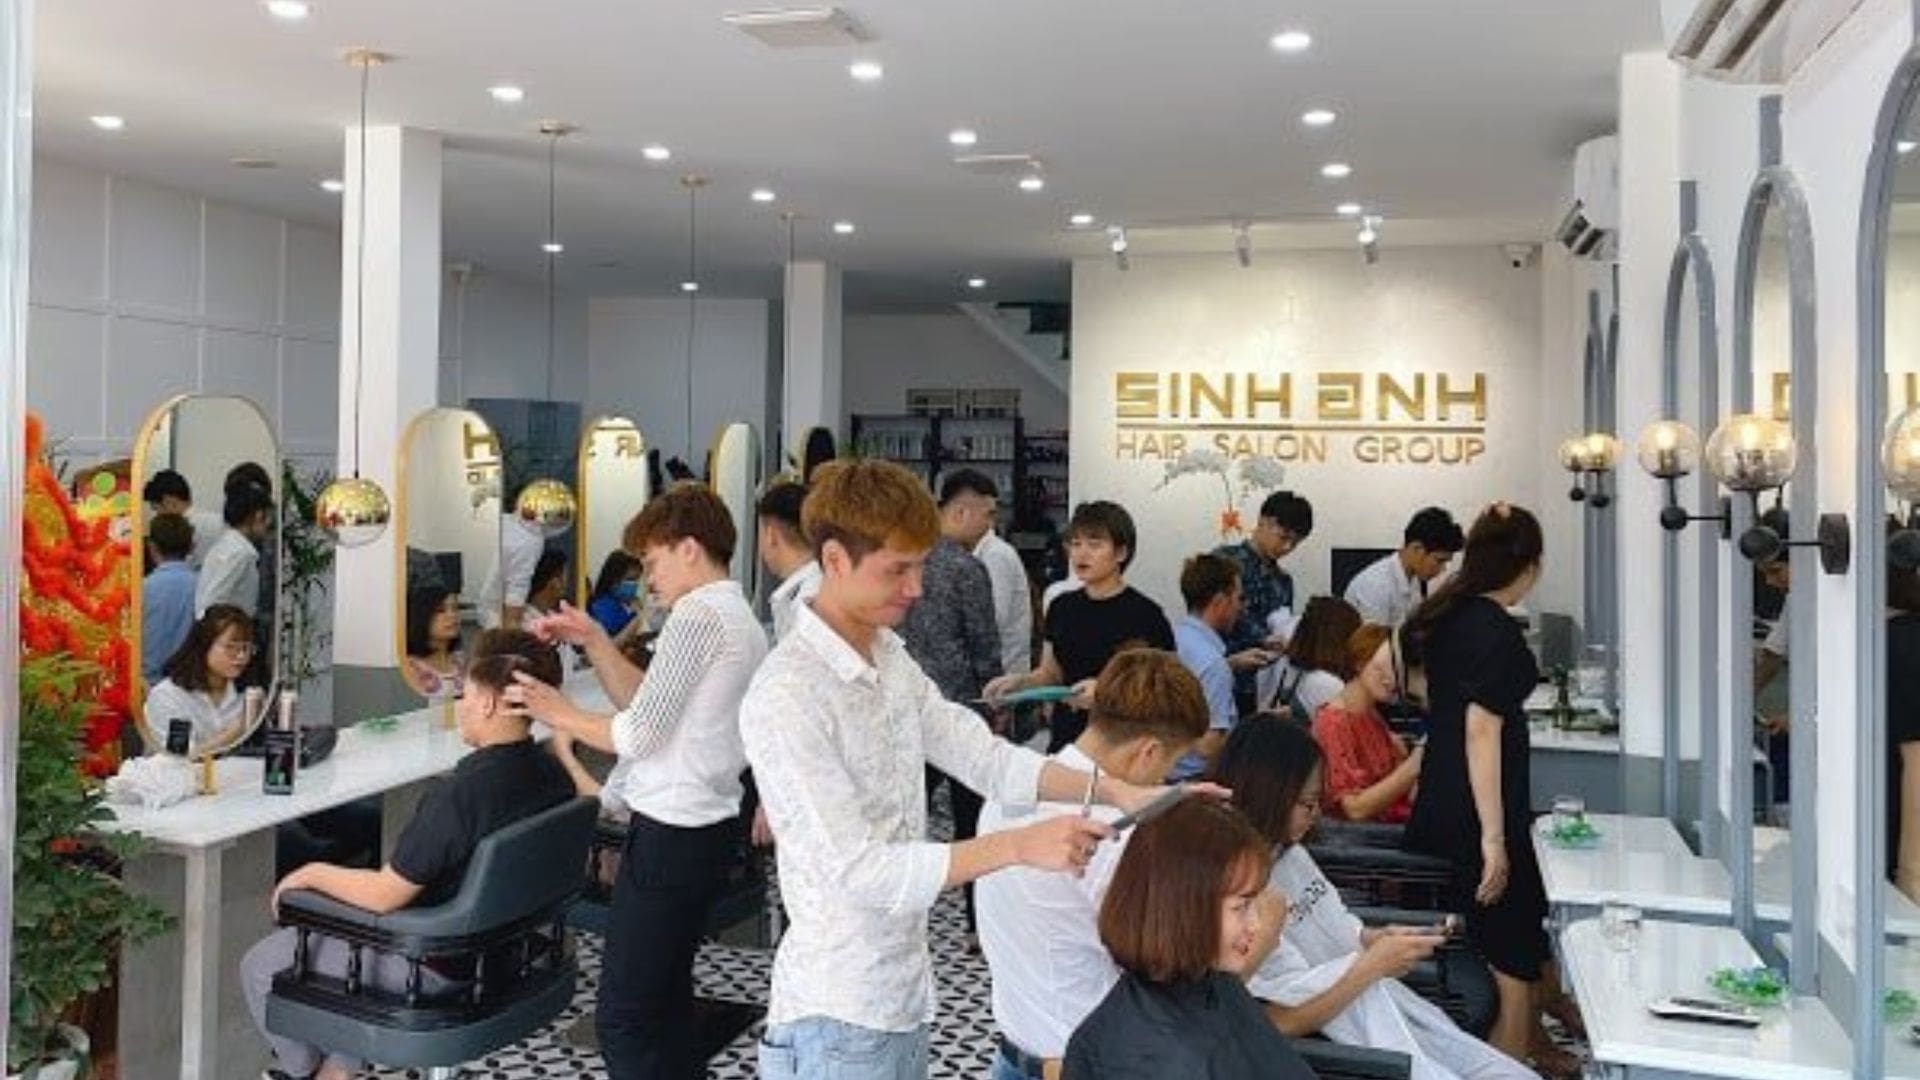 Sinh Anh Hair Salon - Đào tạo thiết kế tóc chuẩn quốc tế